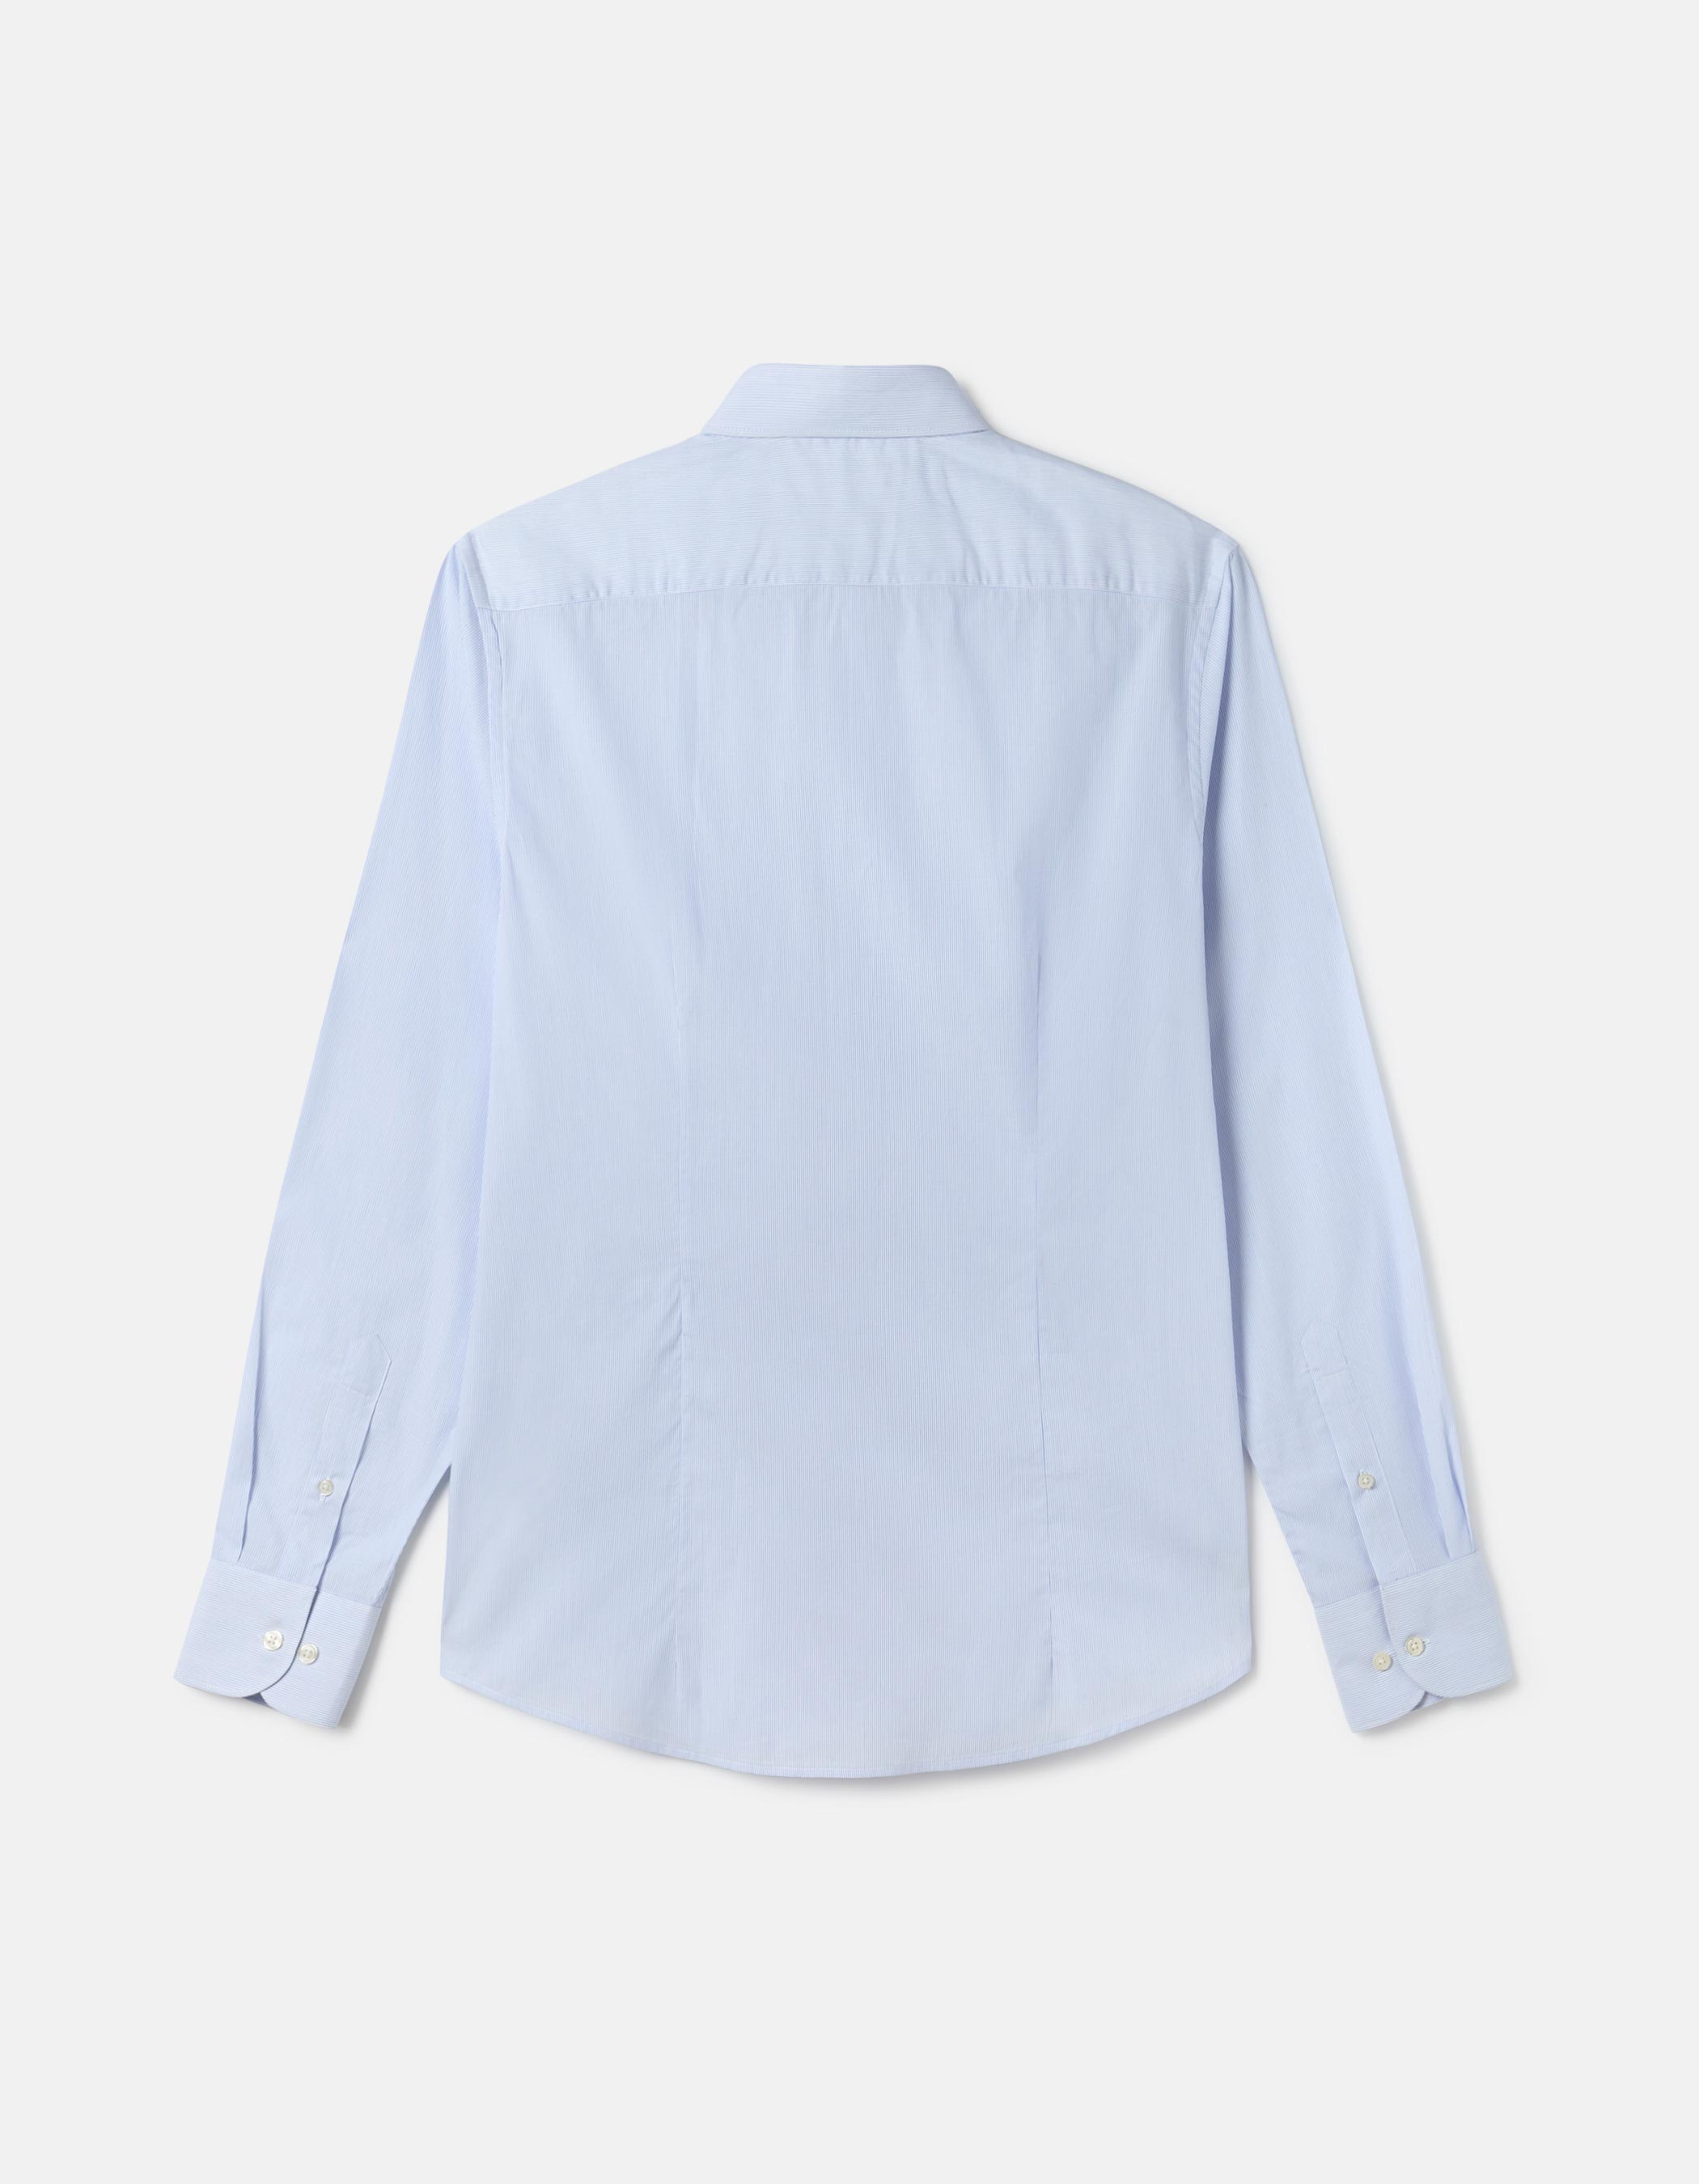 Camisa branca com riscas azuis 2